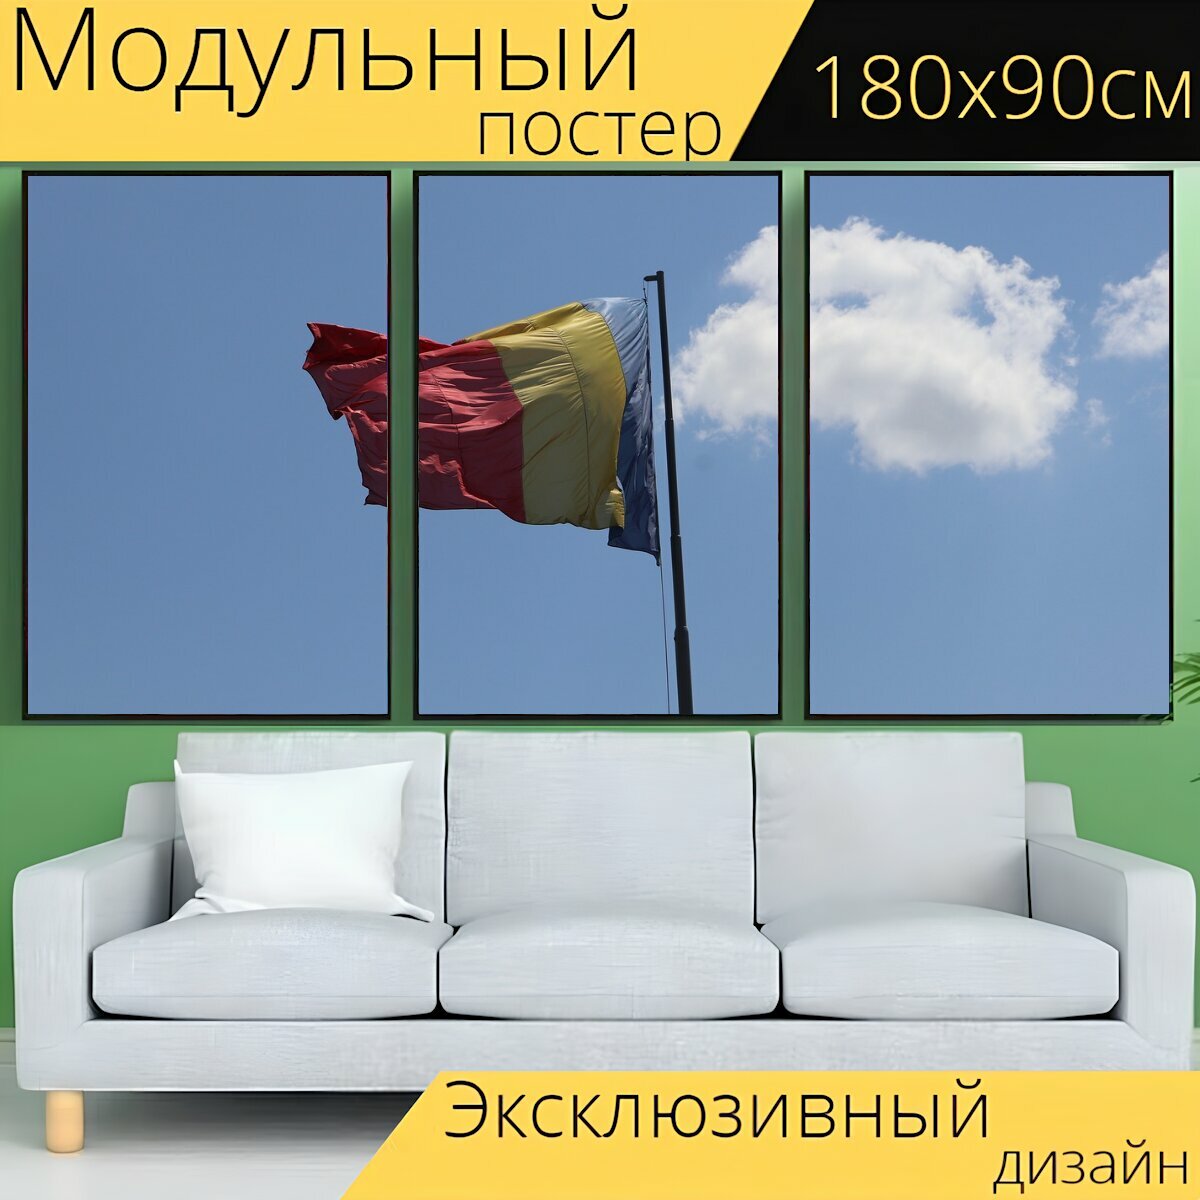 Модульный постер "Флаг, румынский флаг, национальный флаг" 180 x 90 см. для интерьера